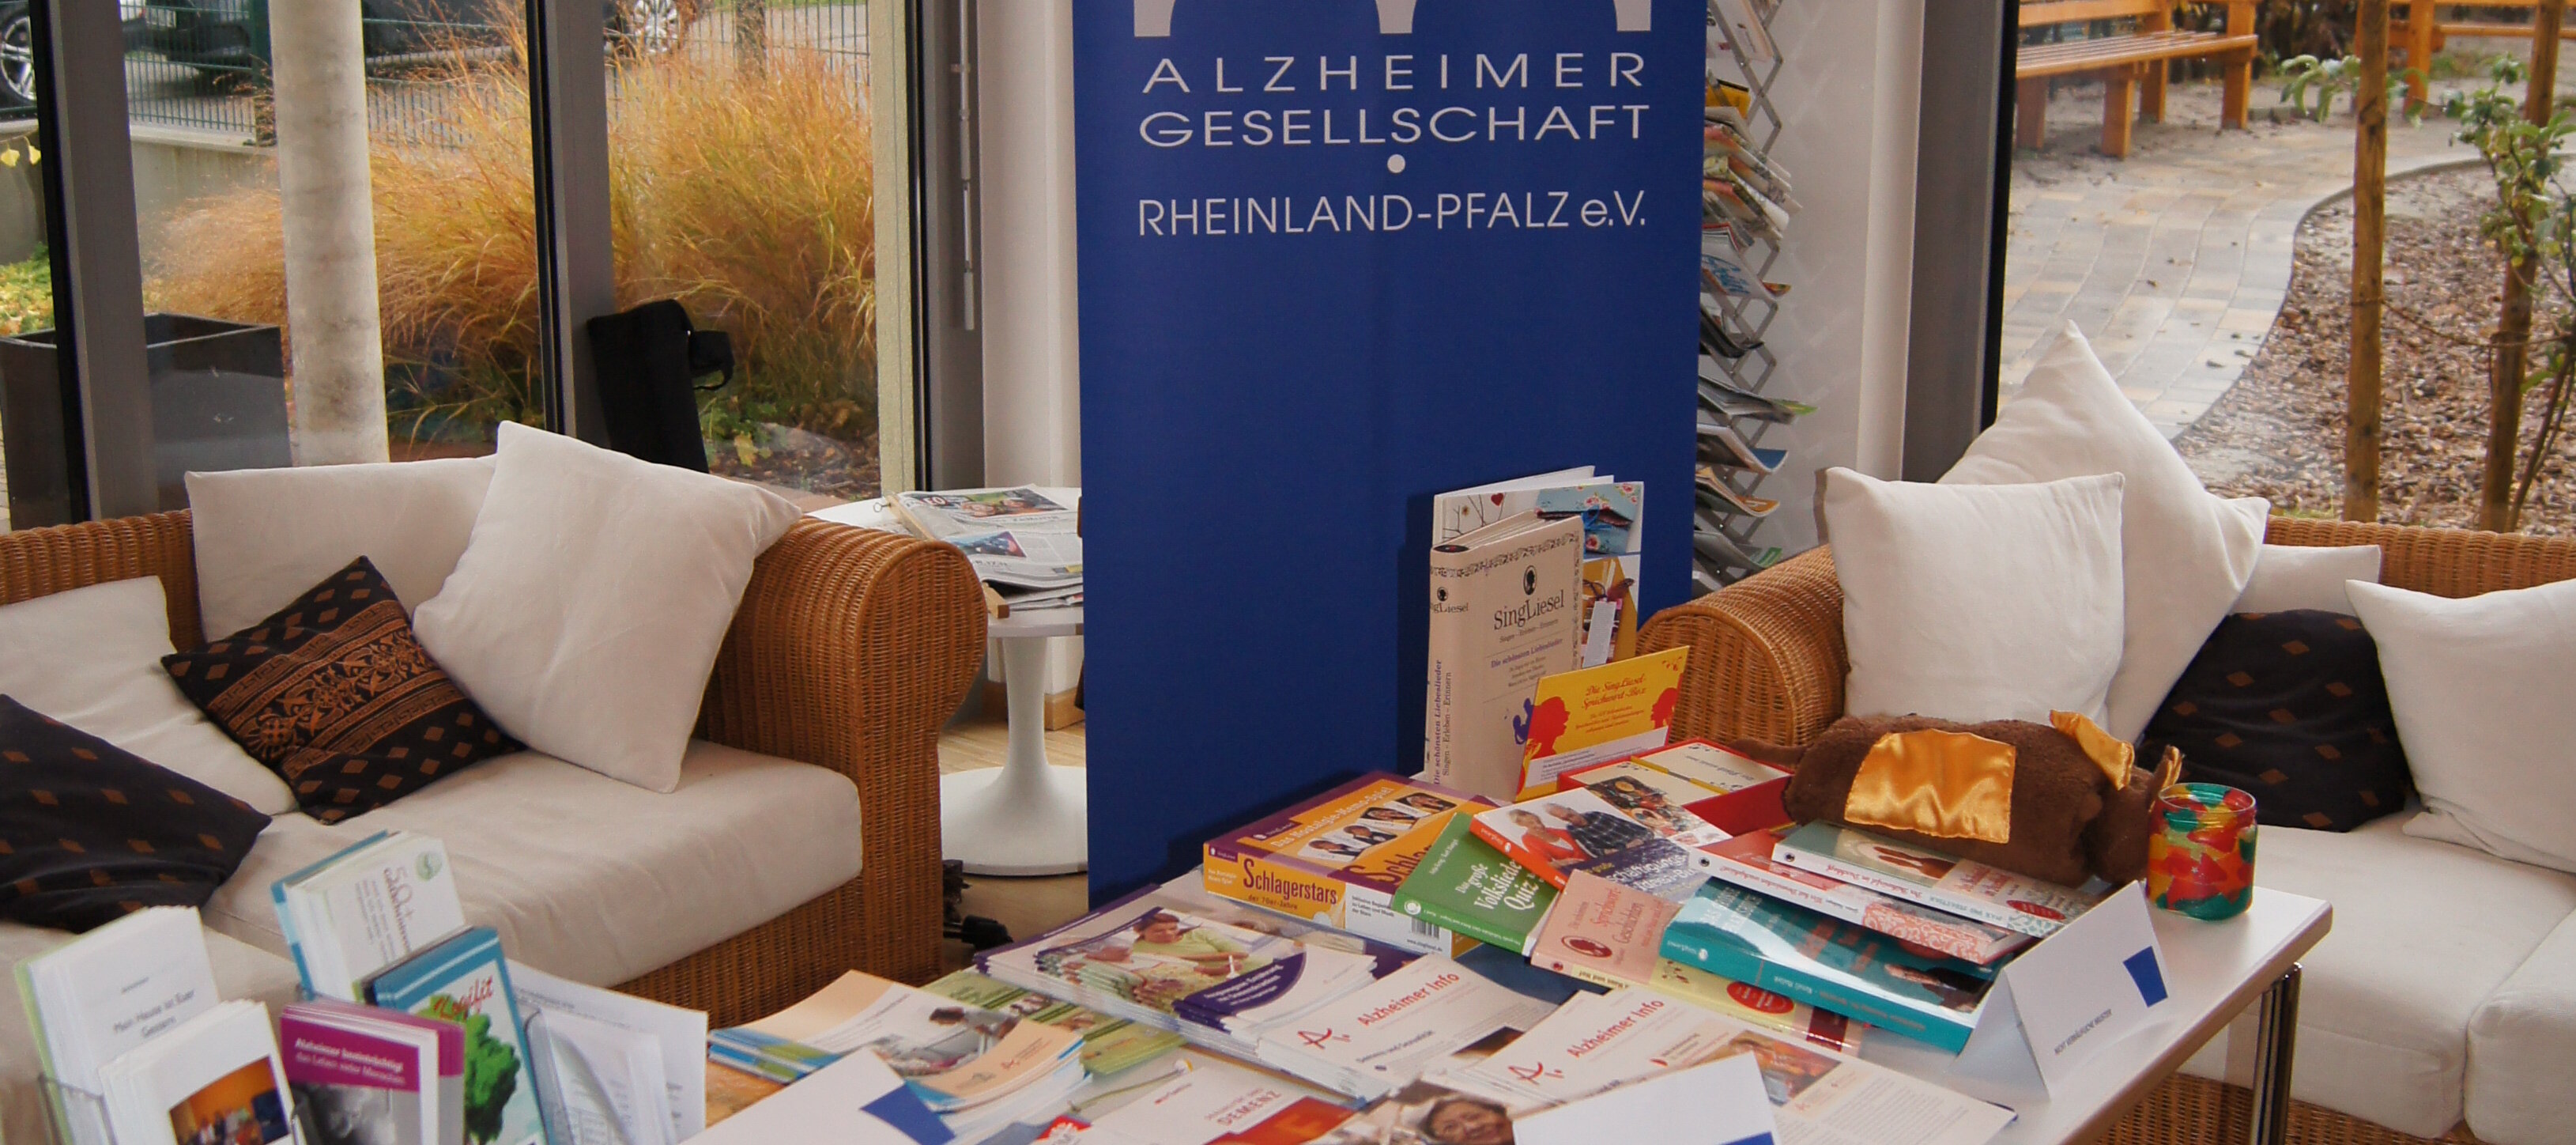 Ein Tisch, auf dem viele Informationsmaterialien der Alzheimergesellschaft liegen. Im Hintergrund steht ein Roll Up der Alzheimergesellschaft.